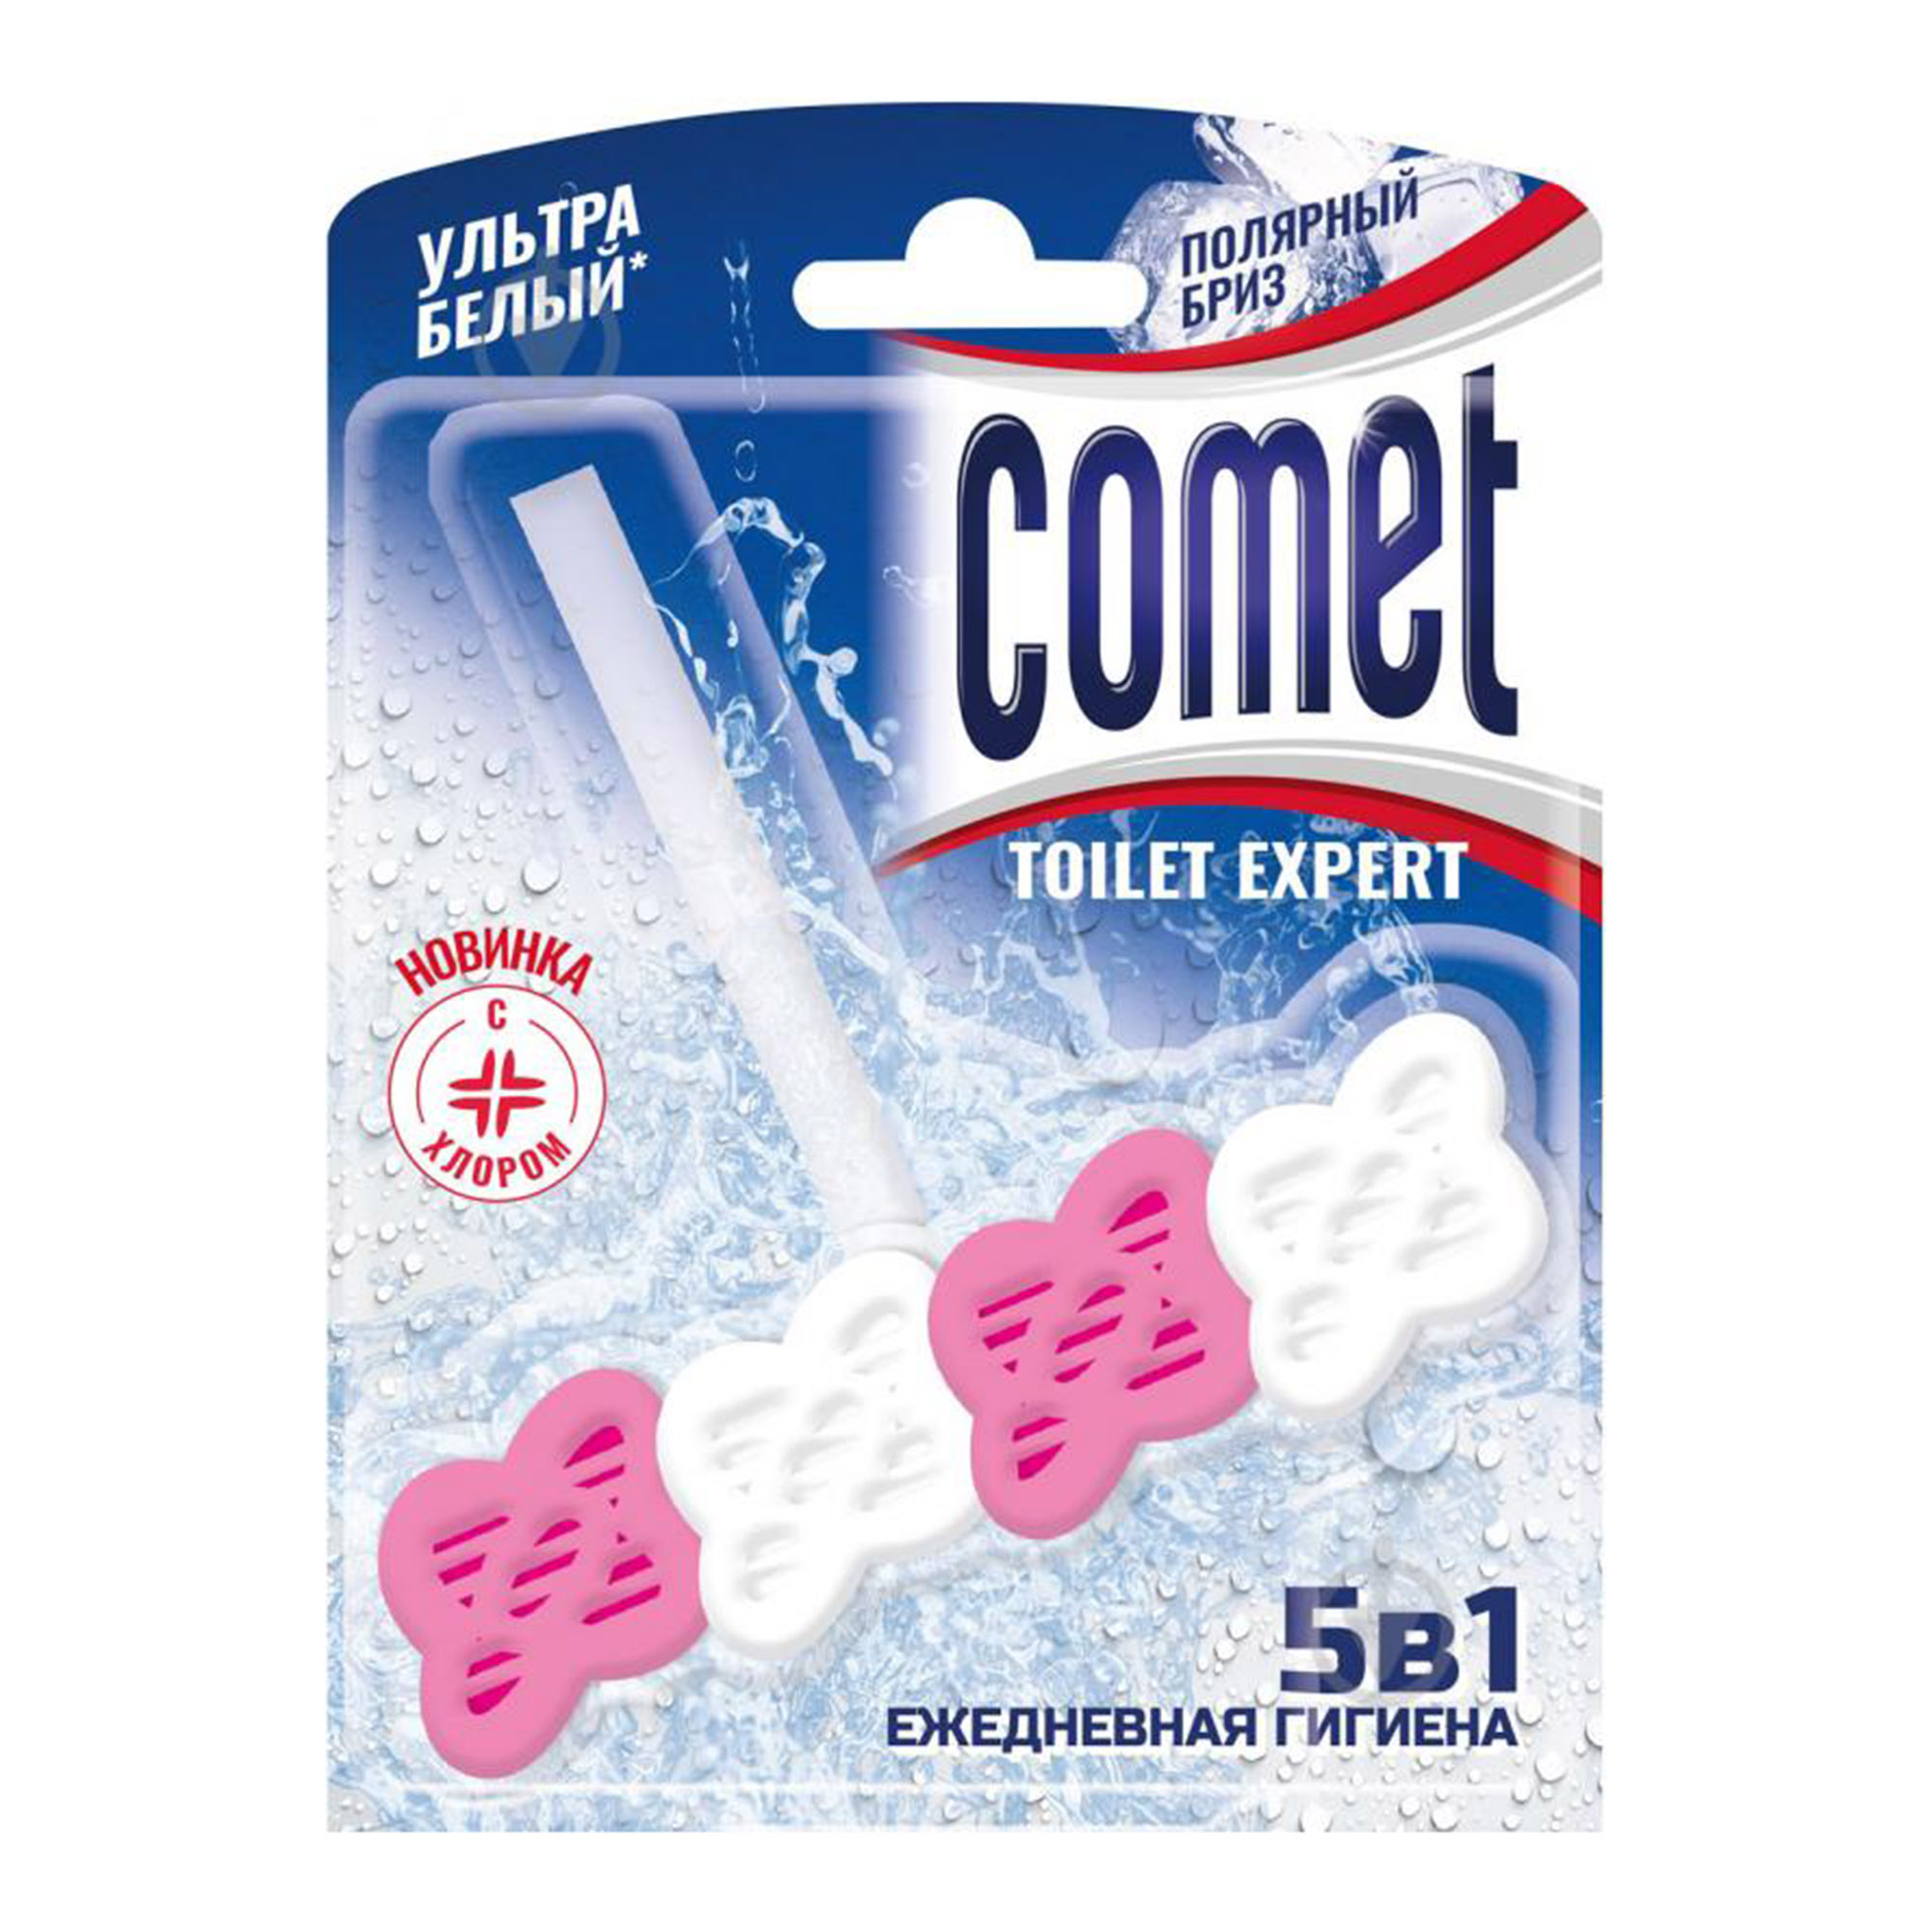 гель для туалетов comet полярный бриз 700 мл Туалетный блок Comet Полярный бриз 48 г